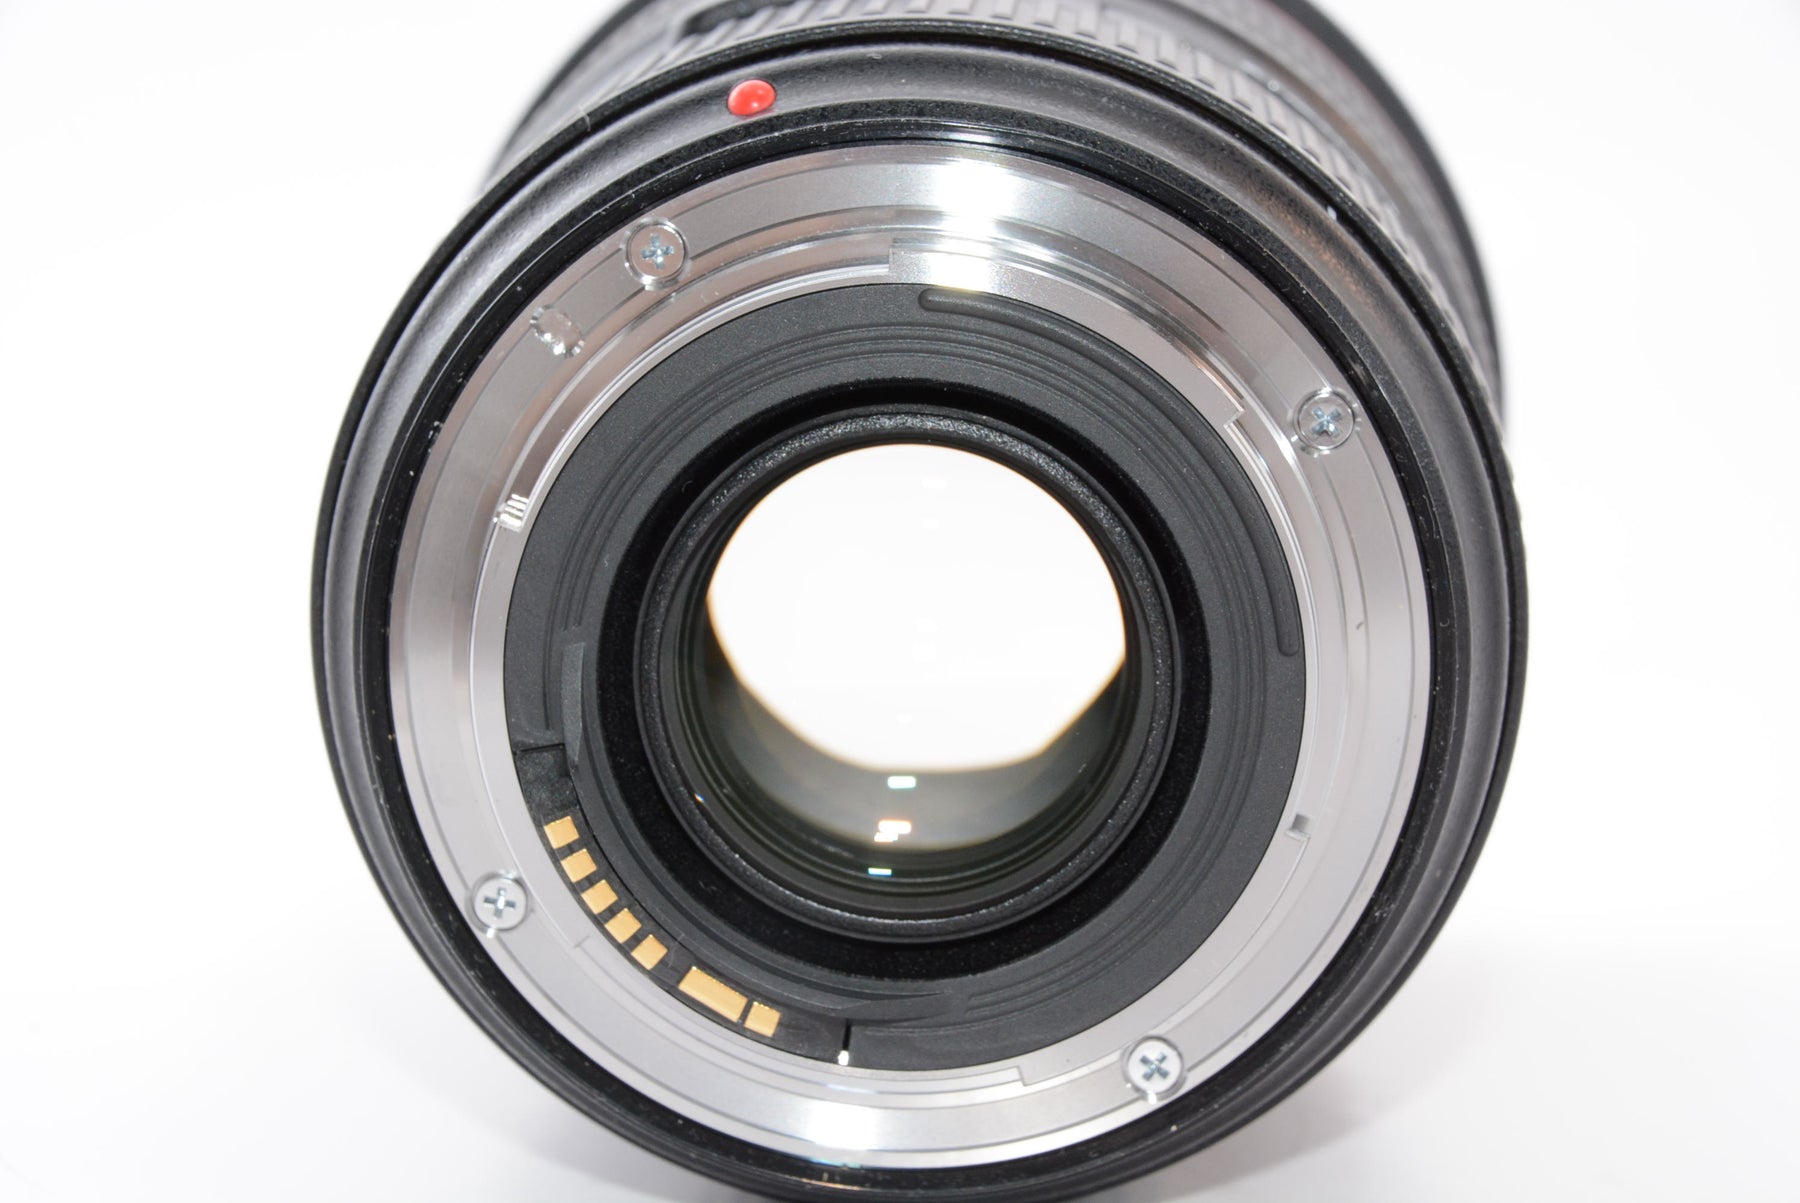 【外観特上級】Canon 標準ズームレンズ EF24-70mm F2.8L II USM フルサイズ対応